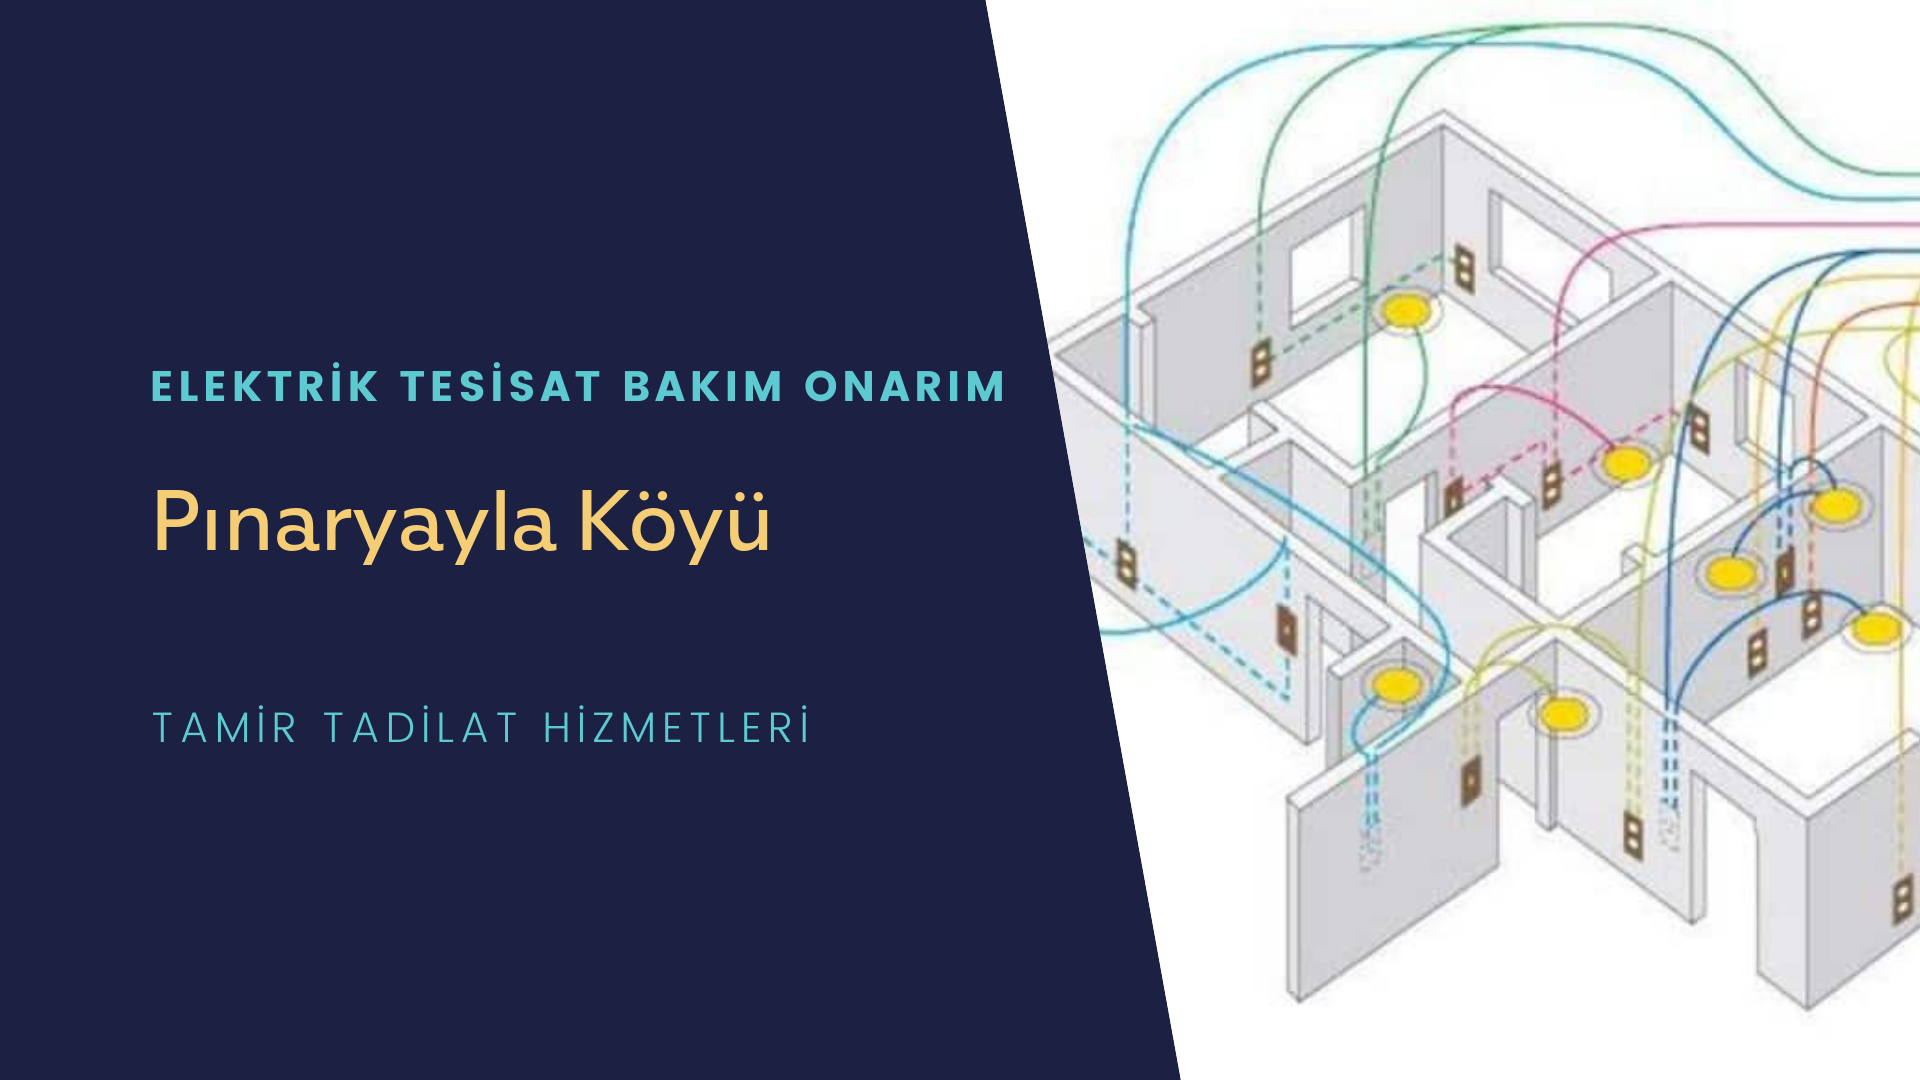 Pınaryayla Köyü  elektrik tesisatı ustalarımı arıyorsunuz doğru adrestenizi Pınaryayla Köyü elektrik tesisatı ustalarımız 7/24 sizlere hizmet vermekten mutluluk duyar.